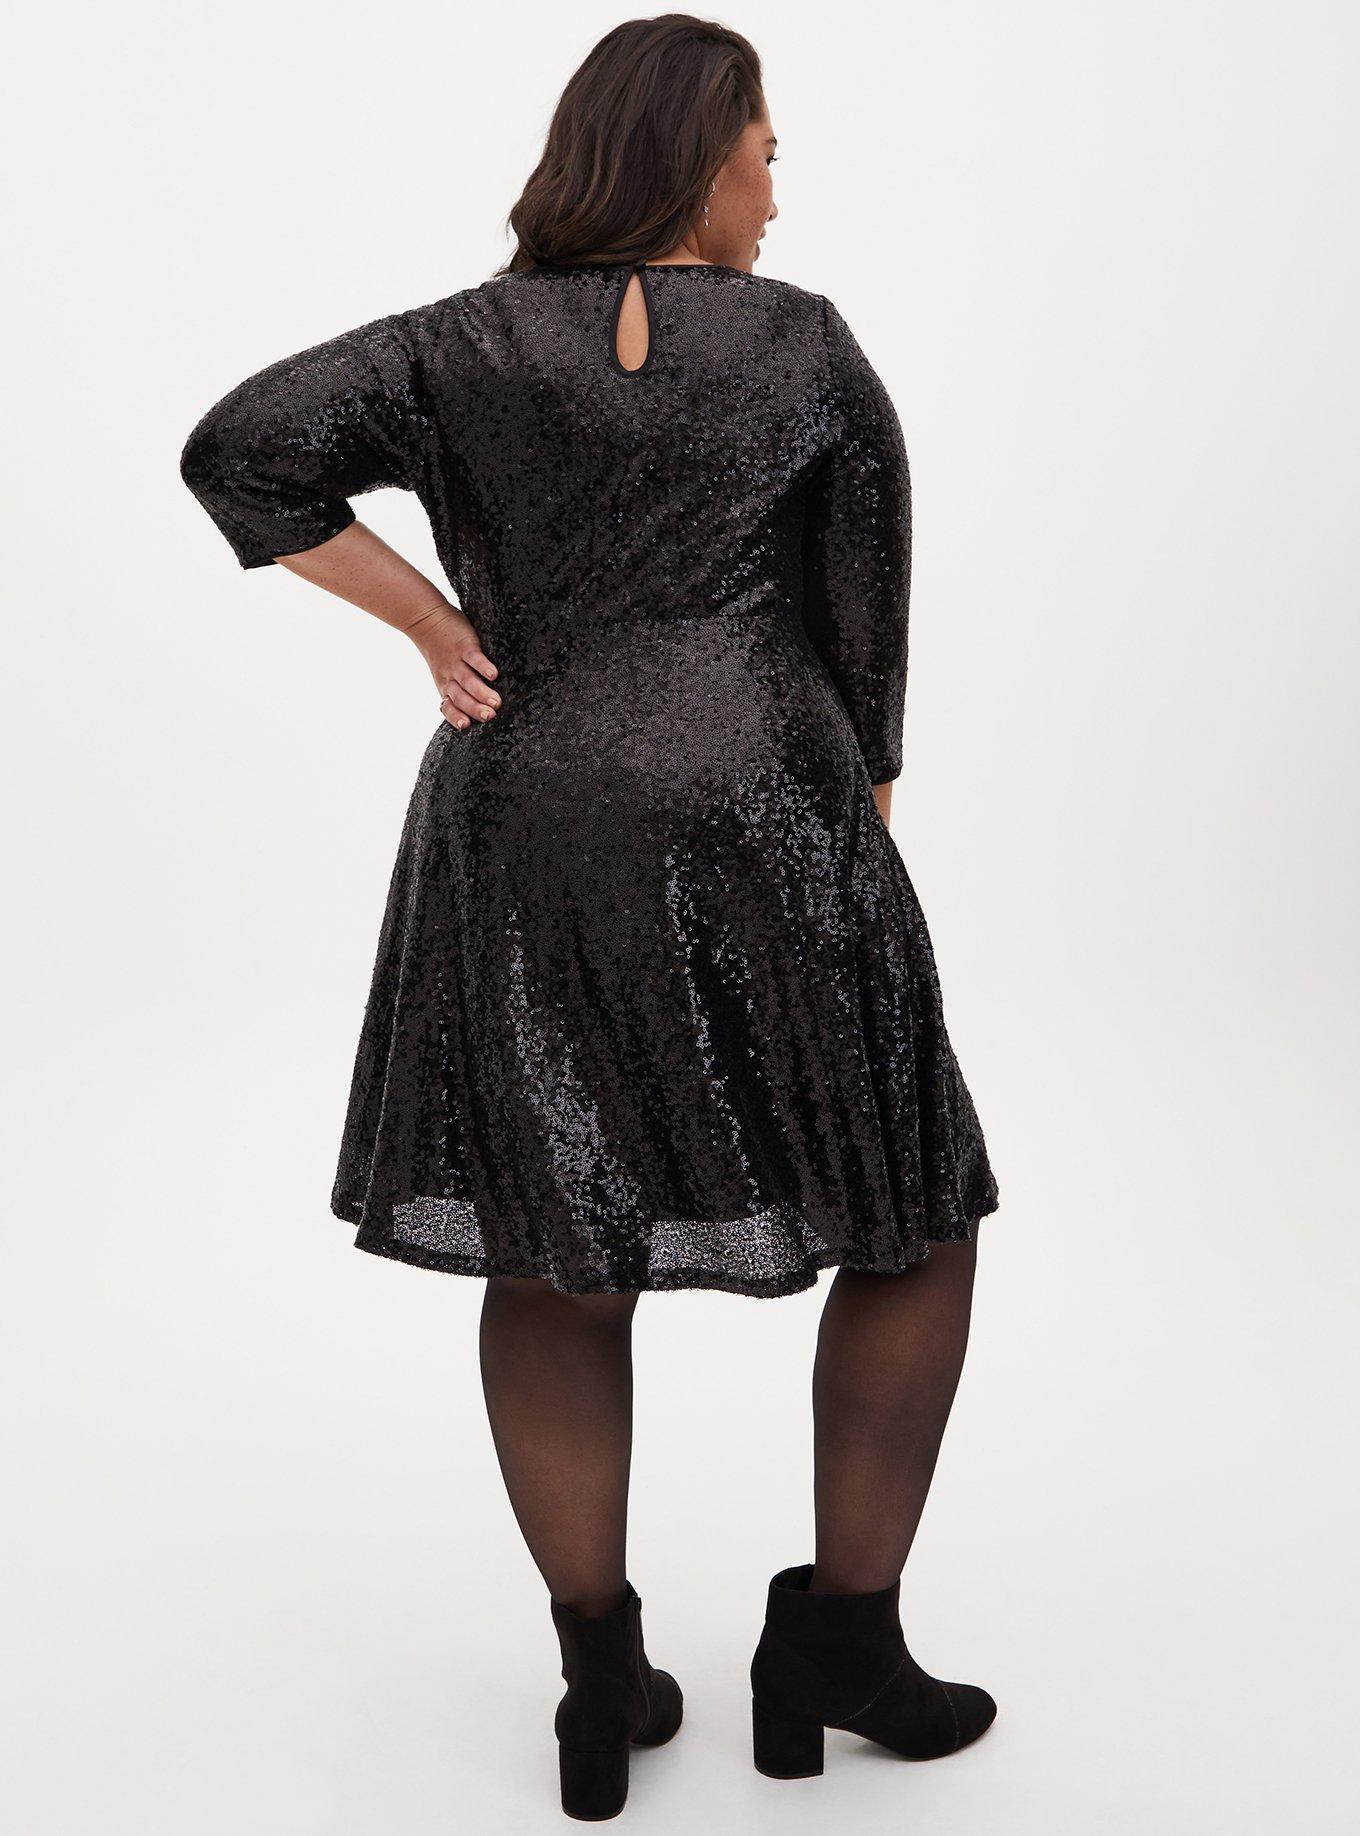 Plus Size Black Sequin Dress –